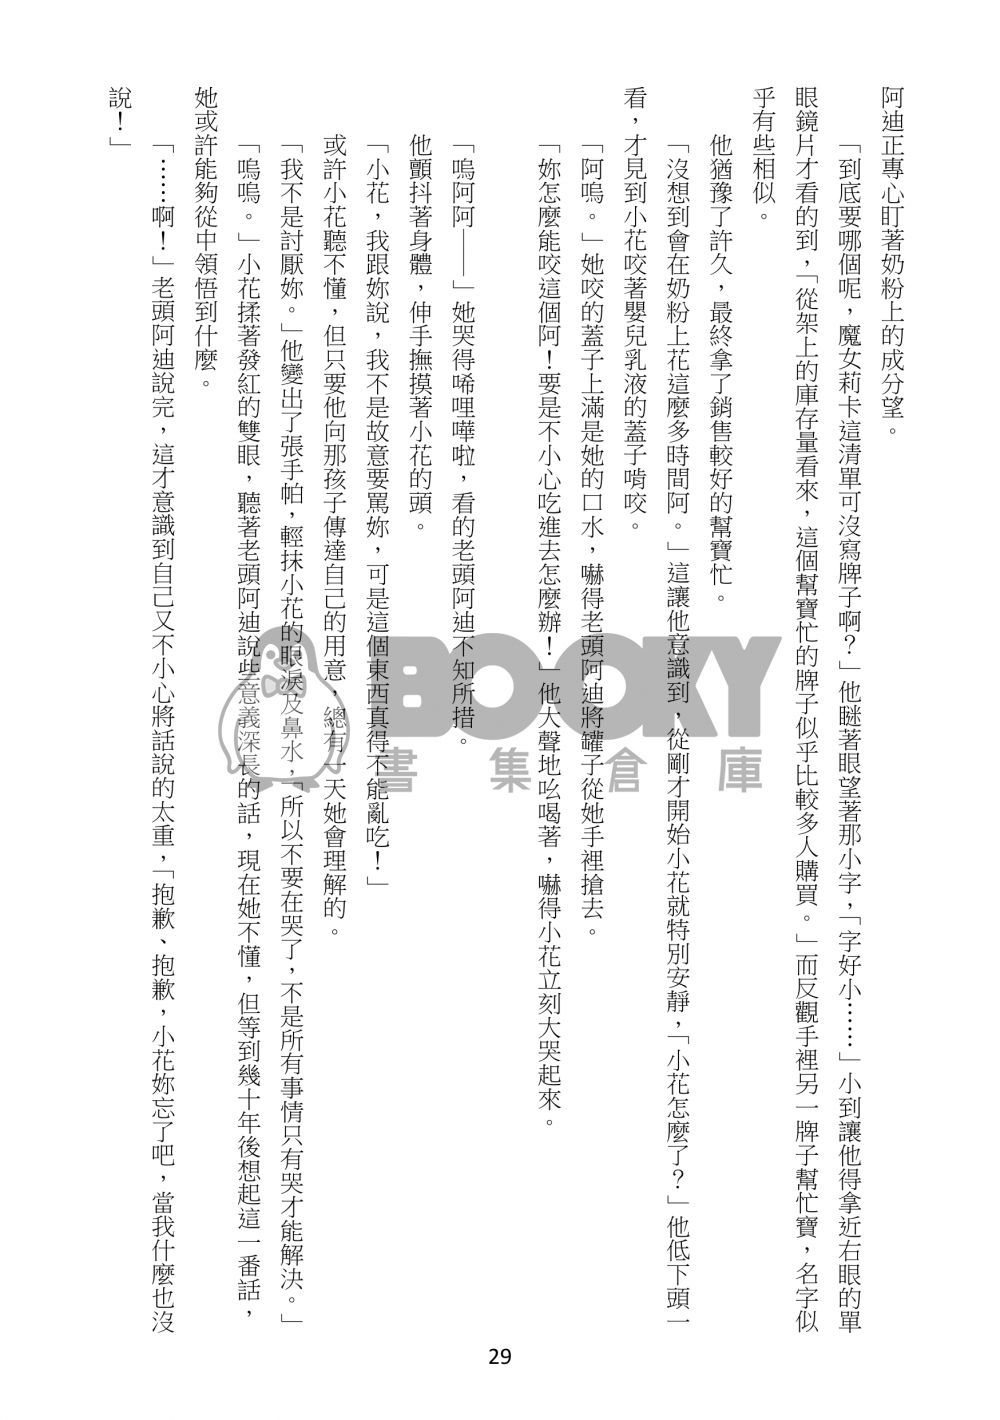 【小魔女DoReMi】Secret~小花與老頭阿迪的回憶~預定至8/1 試閱圖片